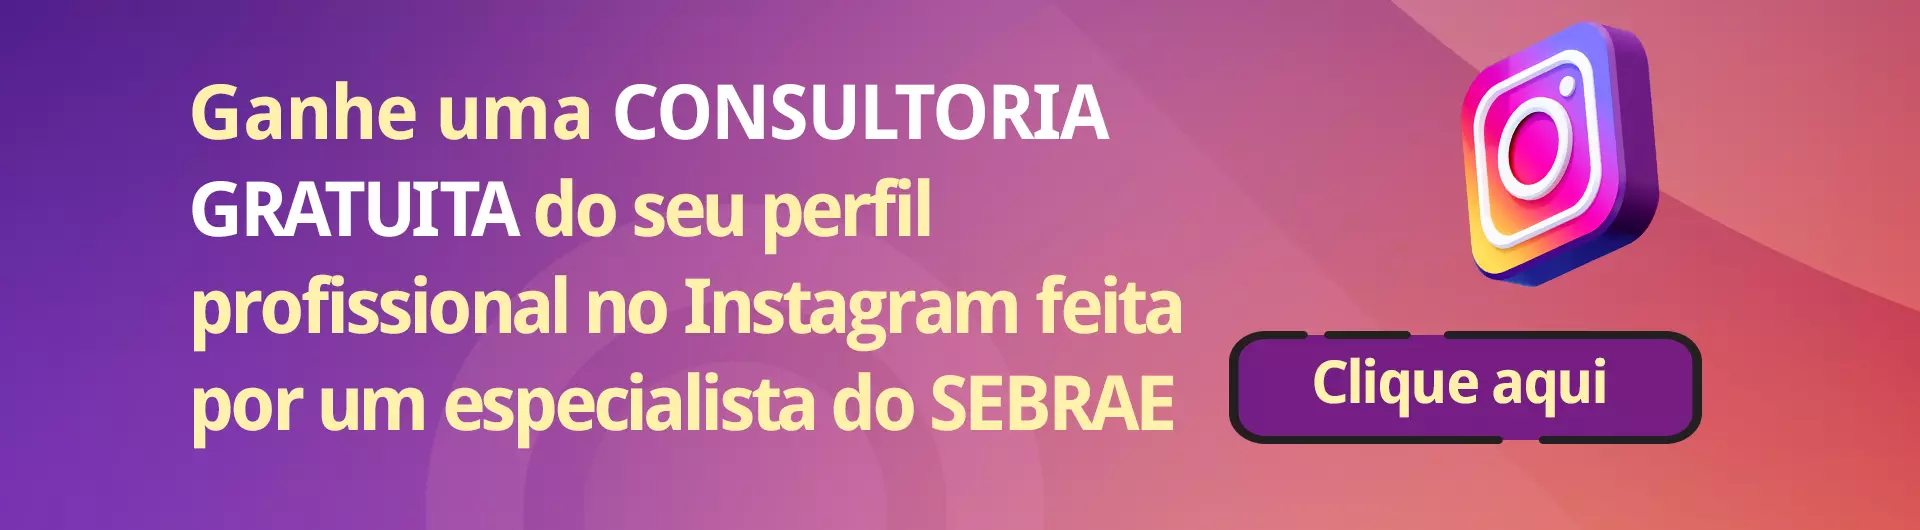 Analise do instagram